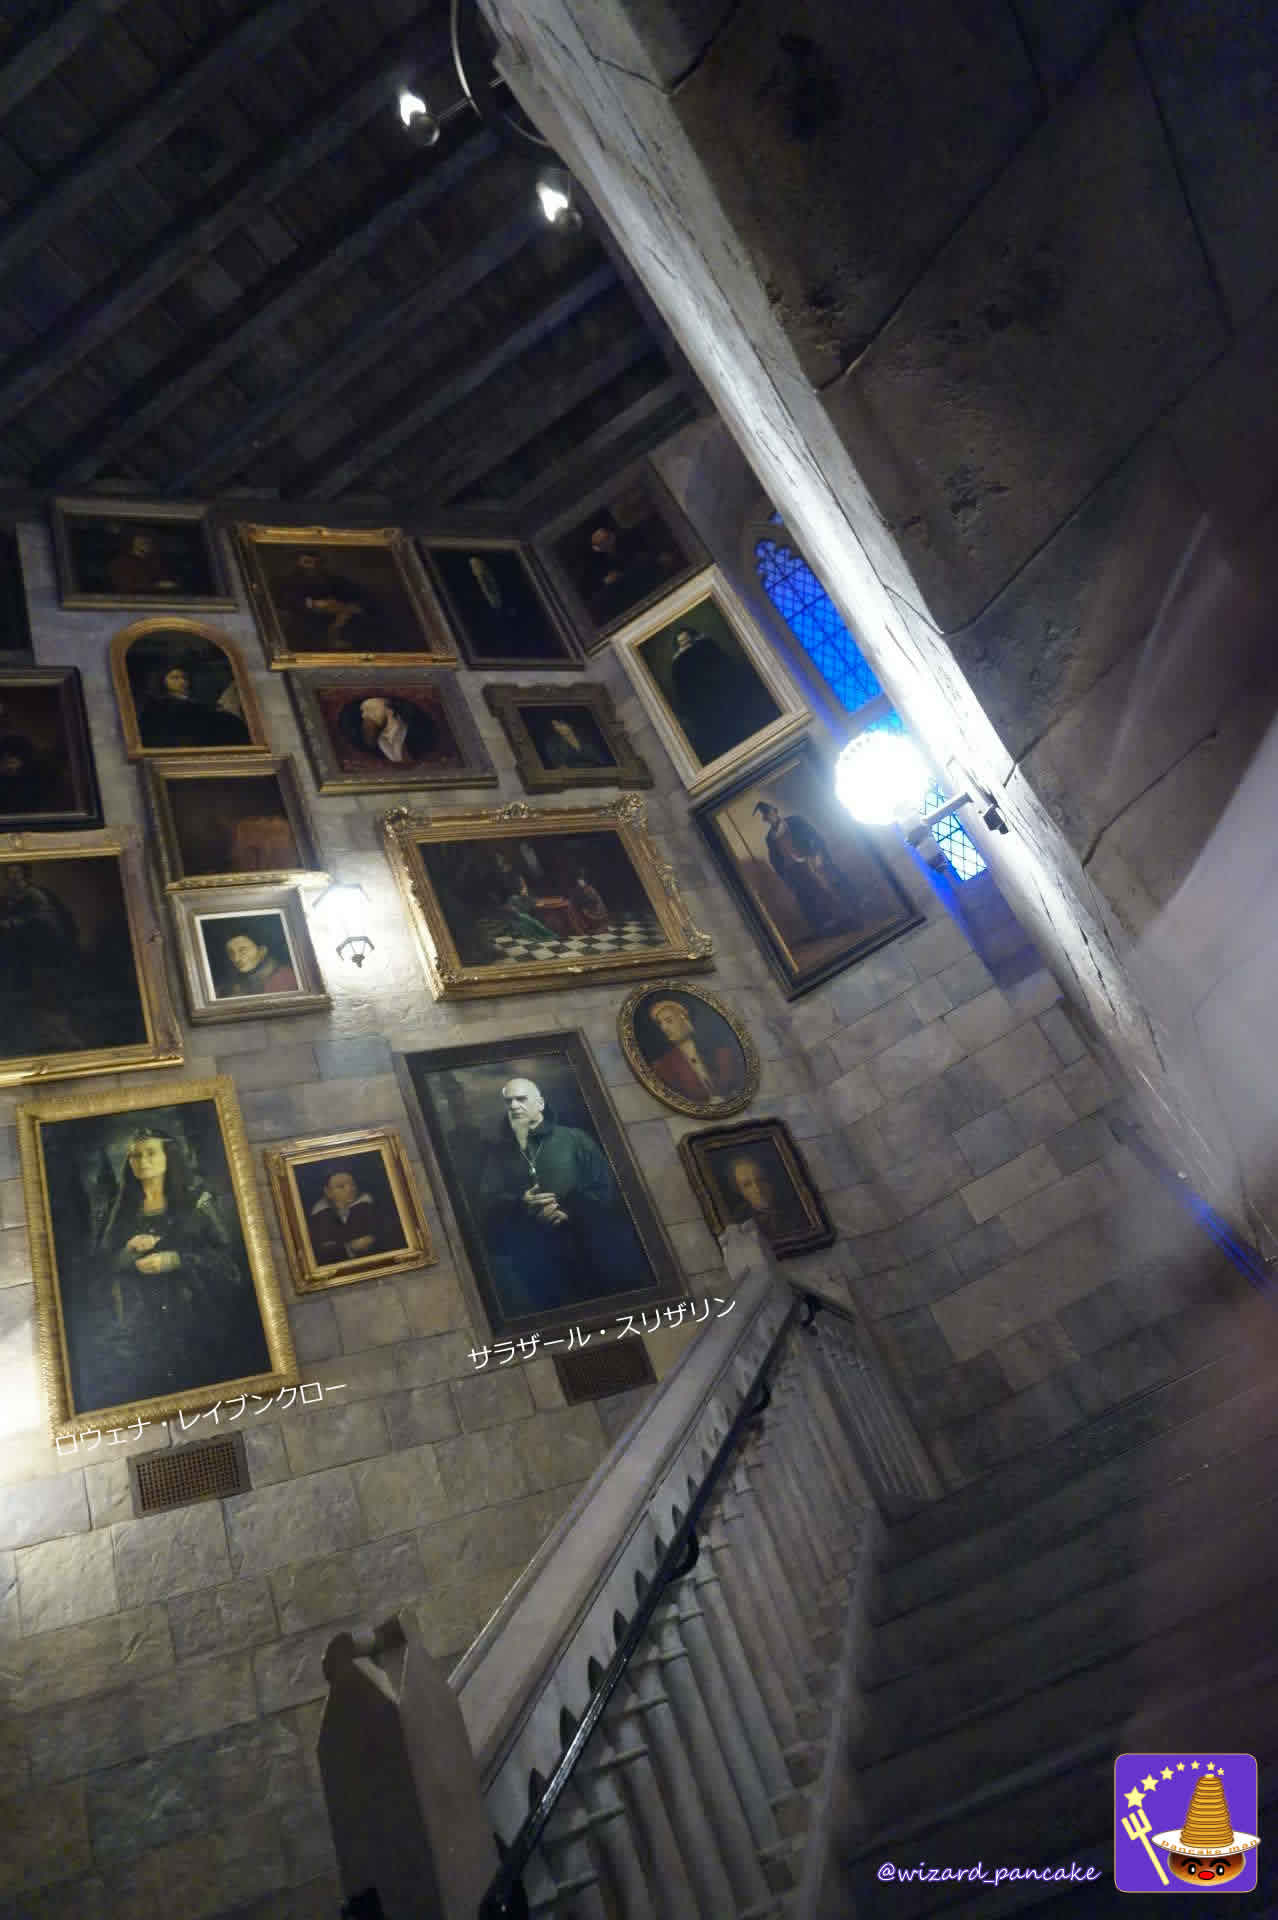 【隠れスポット】ニュート・スキャマンダー教授の肖像画は2種類掲示されておる。ホグワーツ城内の2か所にあるのじゃ♪ USJ 「ハリー・ポッター エリア」 ハリー・ポッター・アンド・ザ・フォービドゥン・ジャーニー